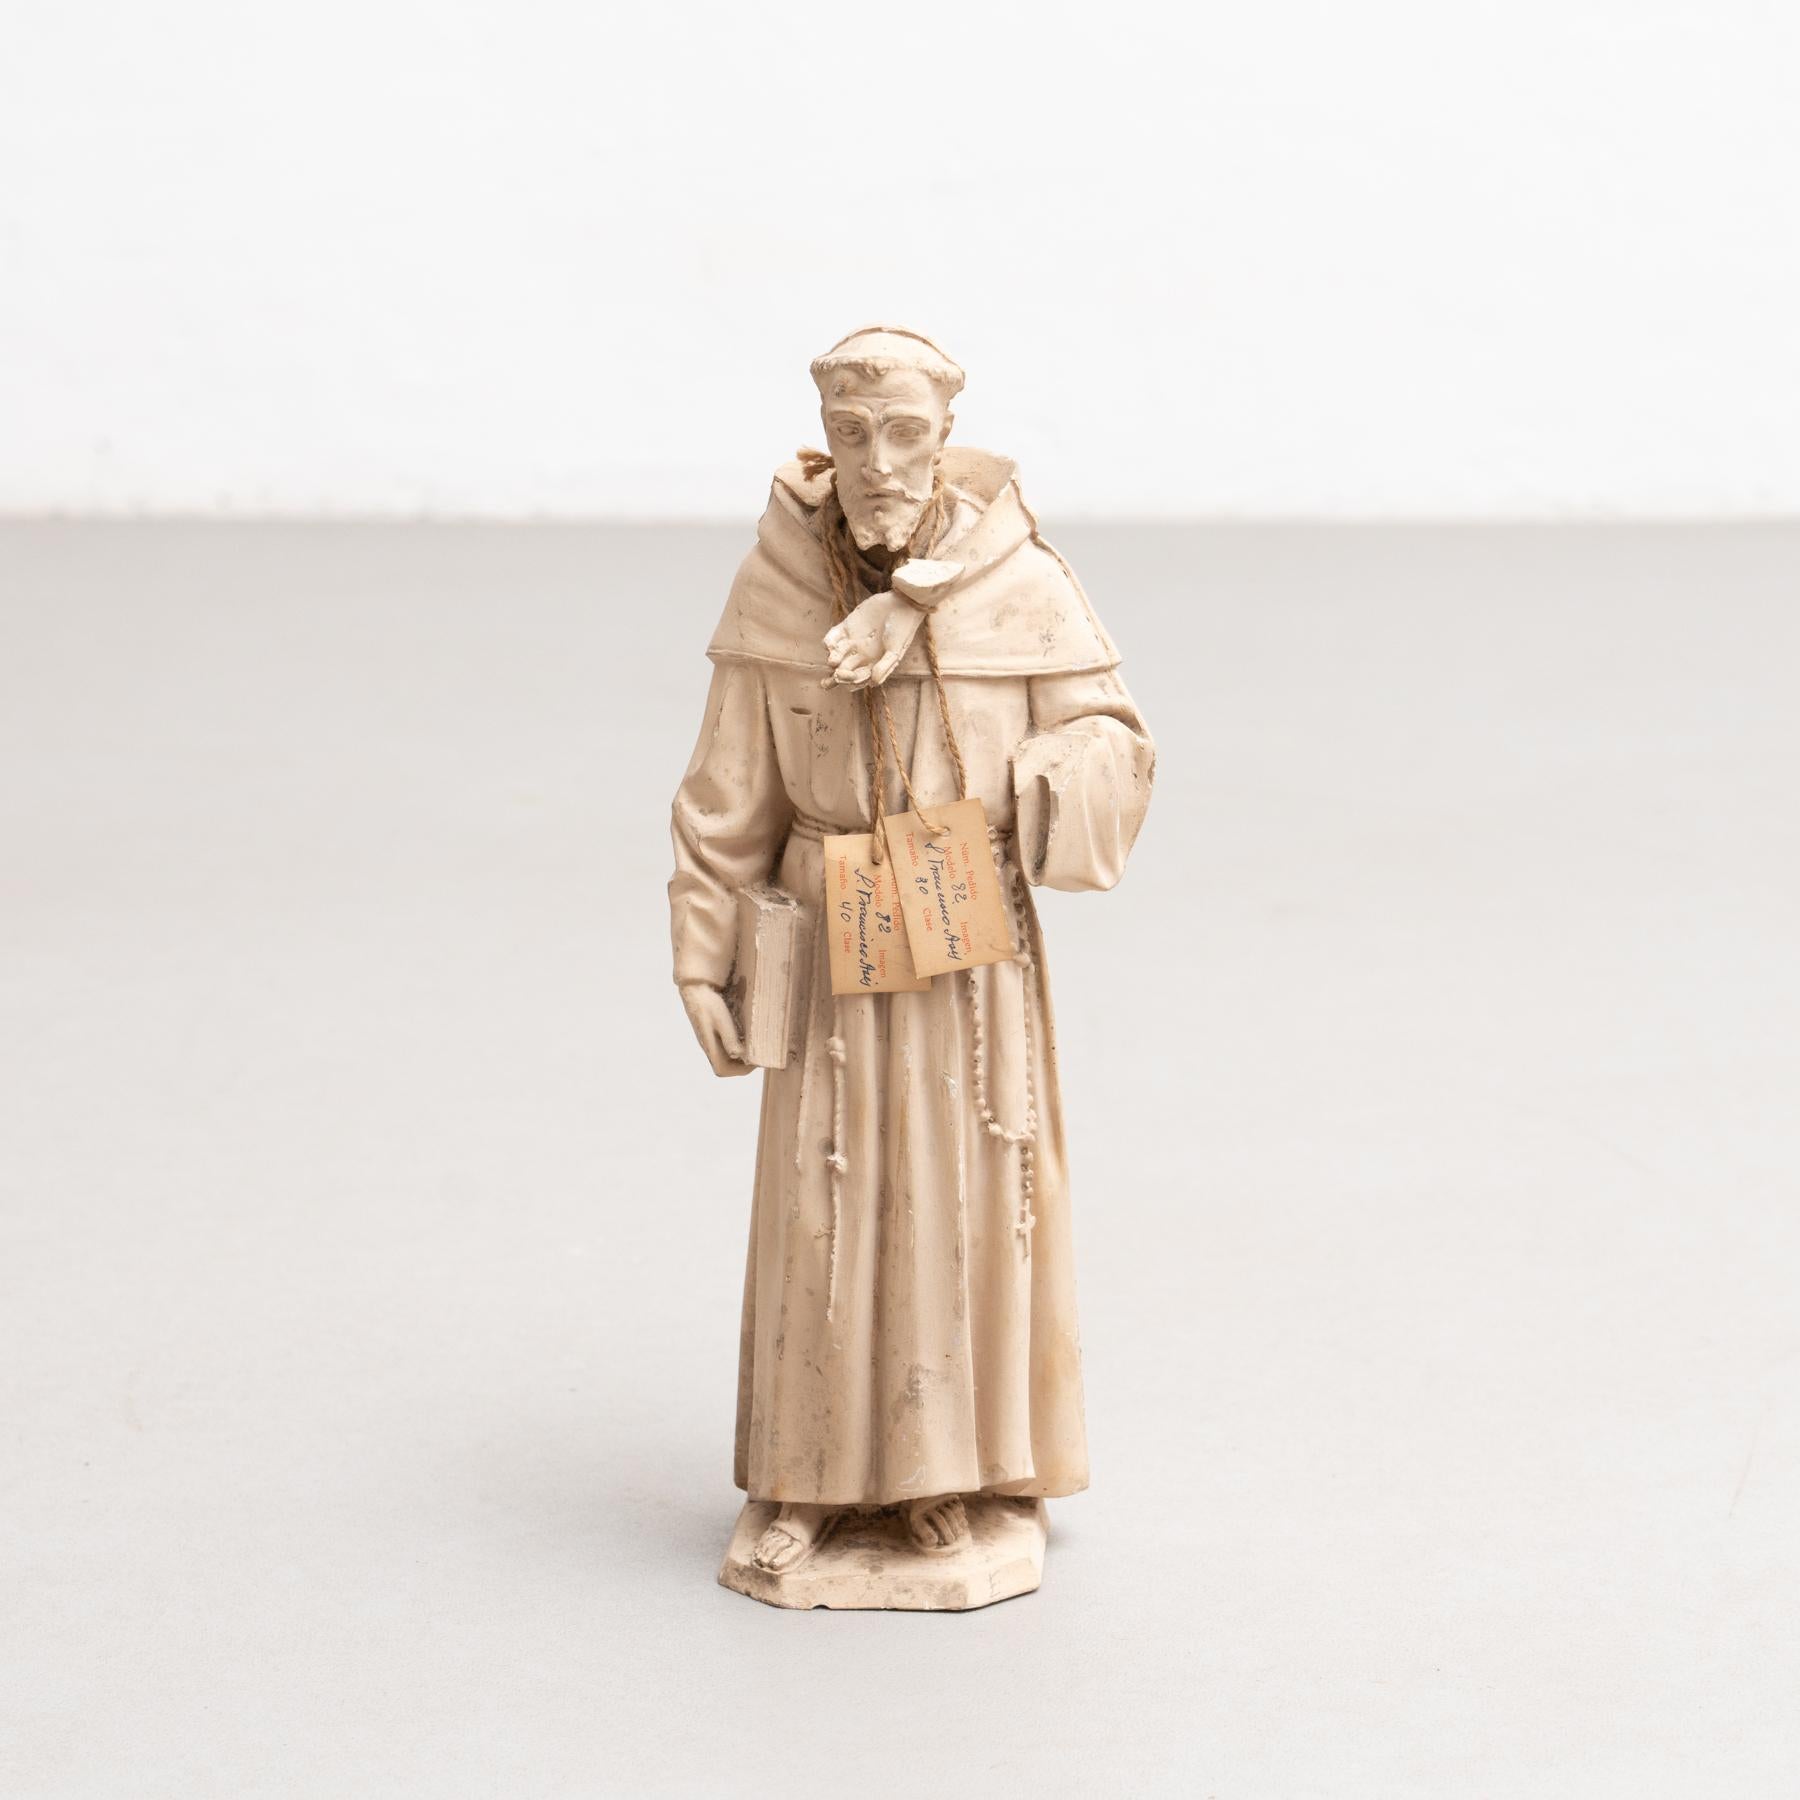 Figure religieuse traditionnelle en plâtre représentant un saint.

Fabriqué dans un atelier catalan traditionnel à Olot, en Espagne, vers 1950.

En état d'origine, avec une usure mineure conforme à l'âge et à l'utilisation, préservant une belle